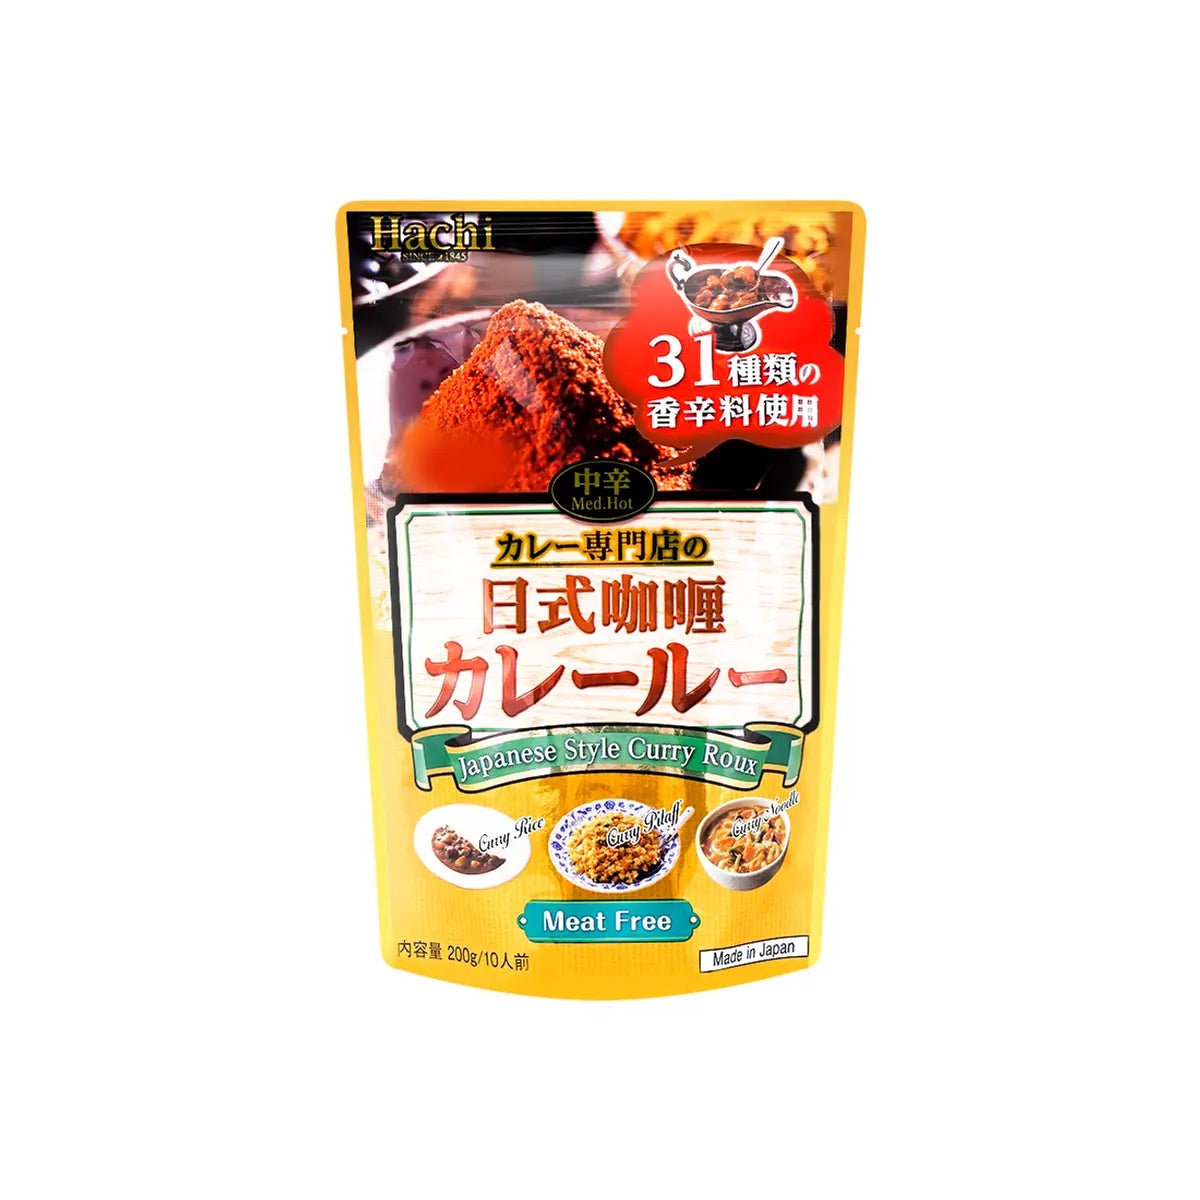 Hachi Estilo Japonés Curry Roux (Med. Picante) - 200g/7oz